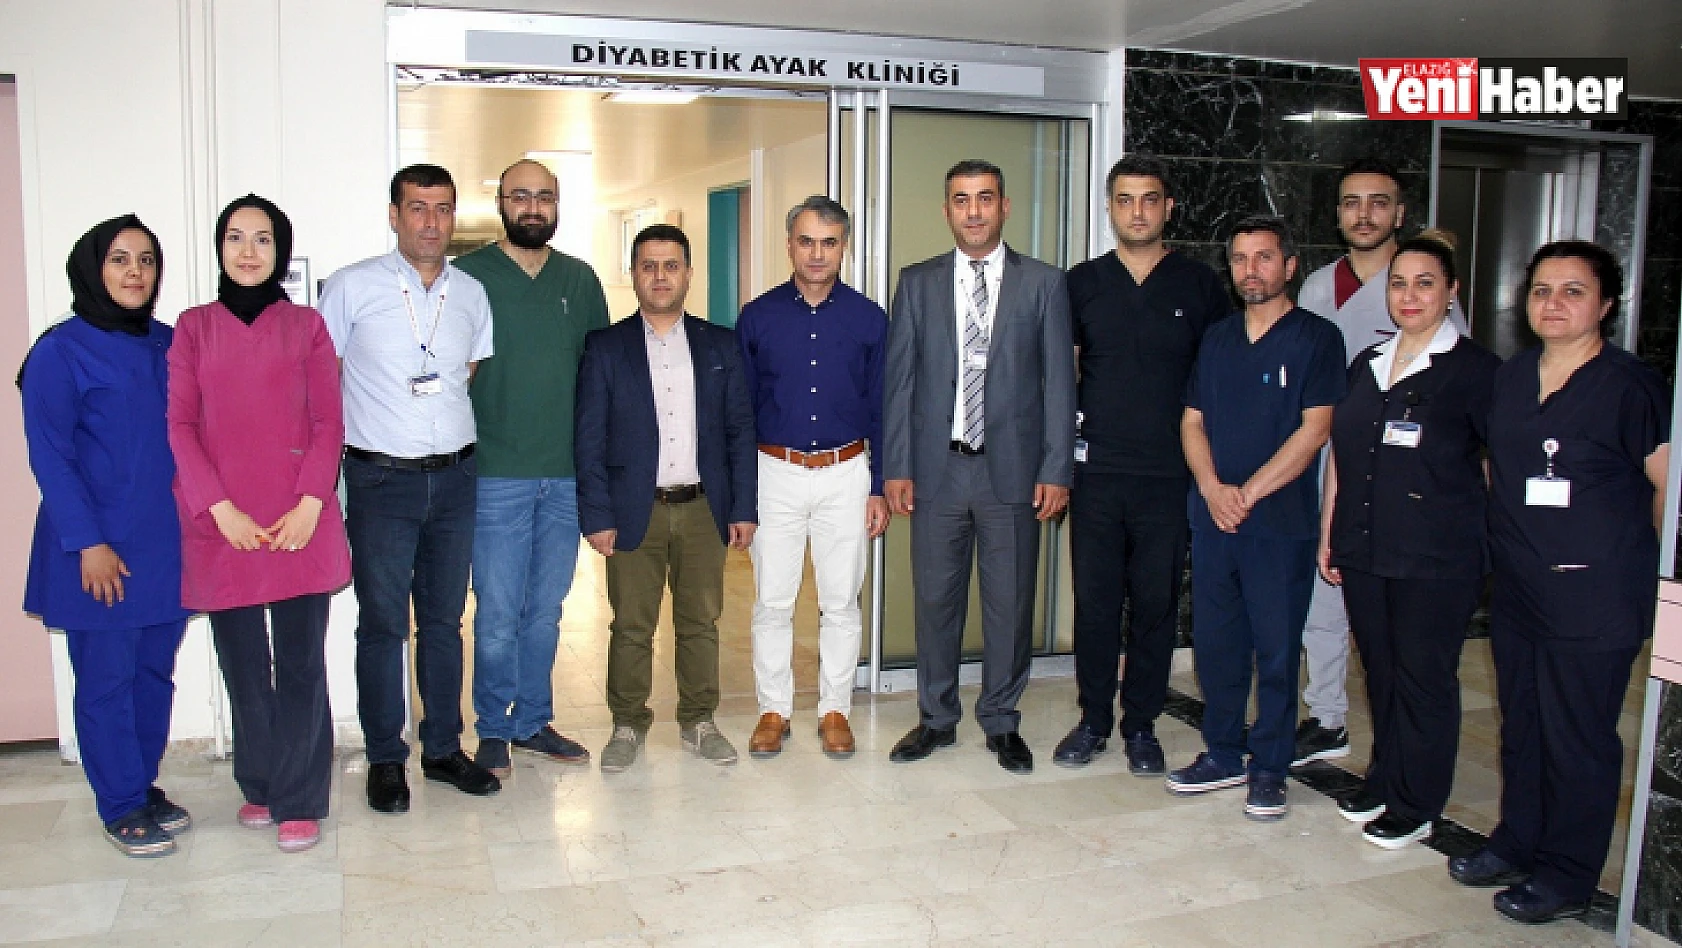 FÜ Hastanesinde Diyabetik Ayak Kliniği açıldı